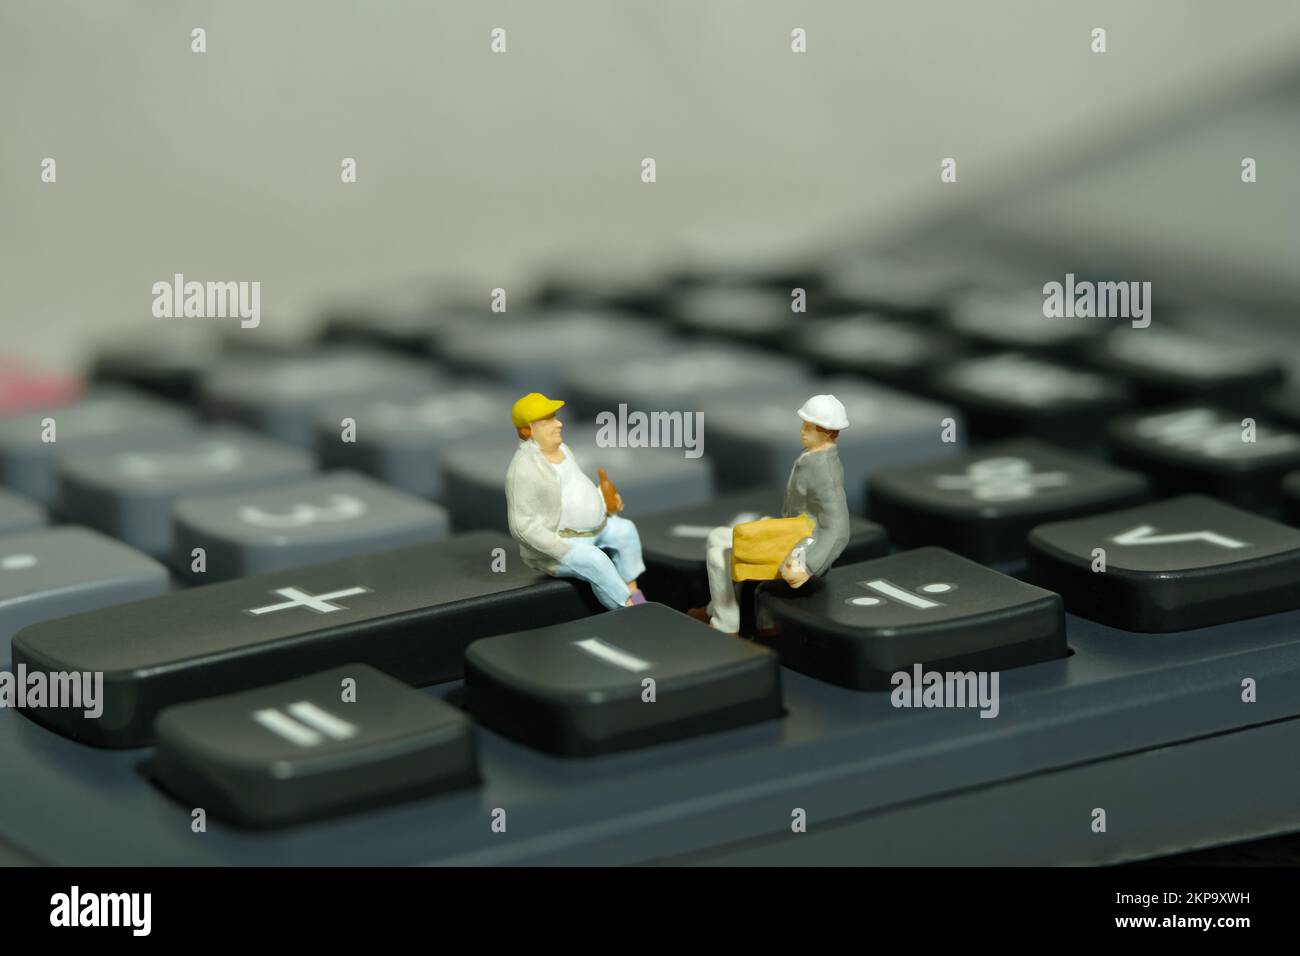 Miniatur-Menschen-Spielzeug-Figuren-Fotografie. Besprechung des Projektbudgets. Zwei Arbeiter, die über dem Taschenrechner sitzen. Bildfoto Stockfoto